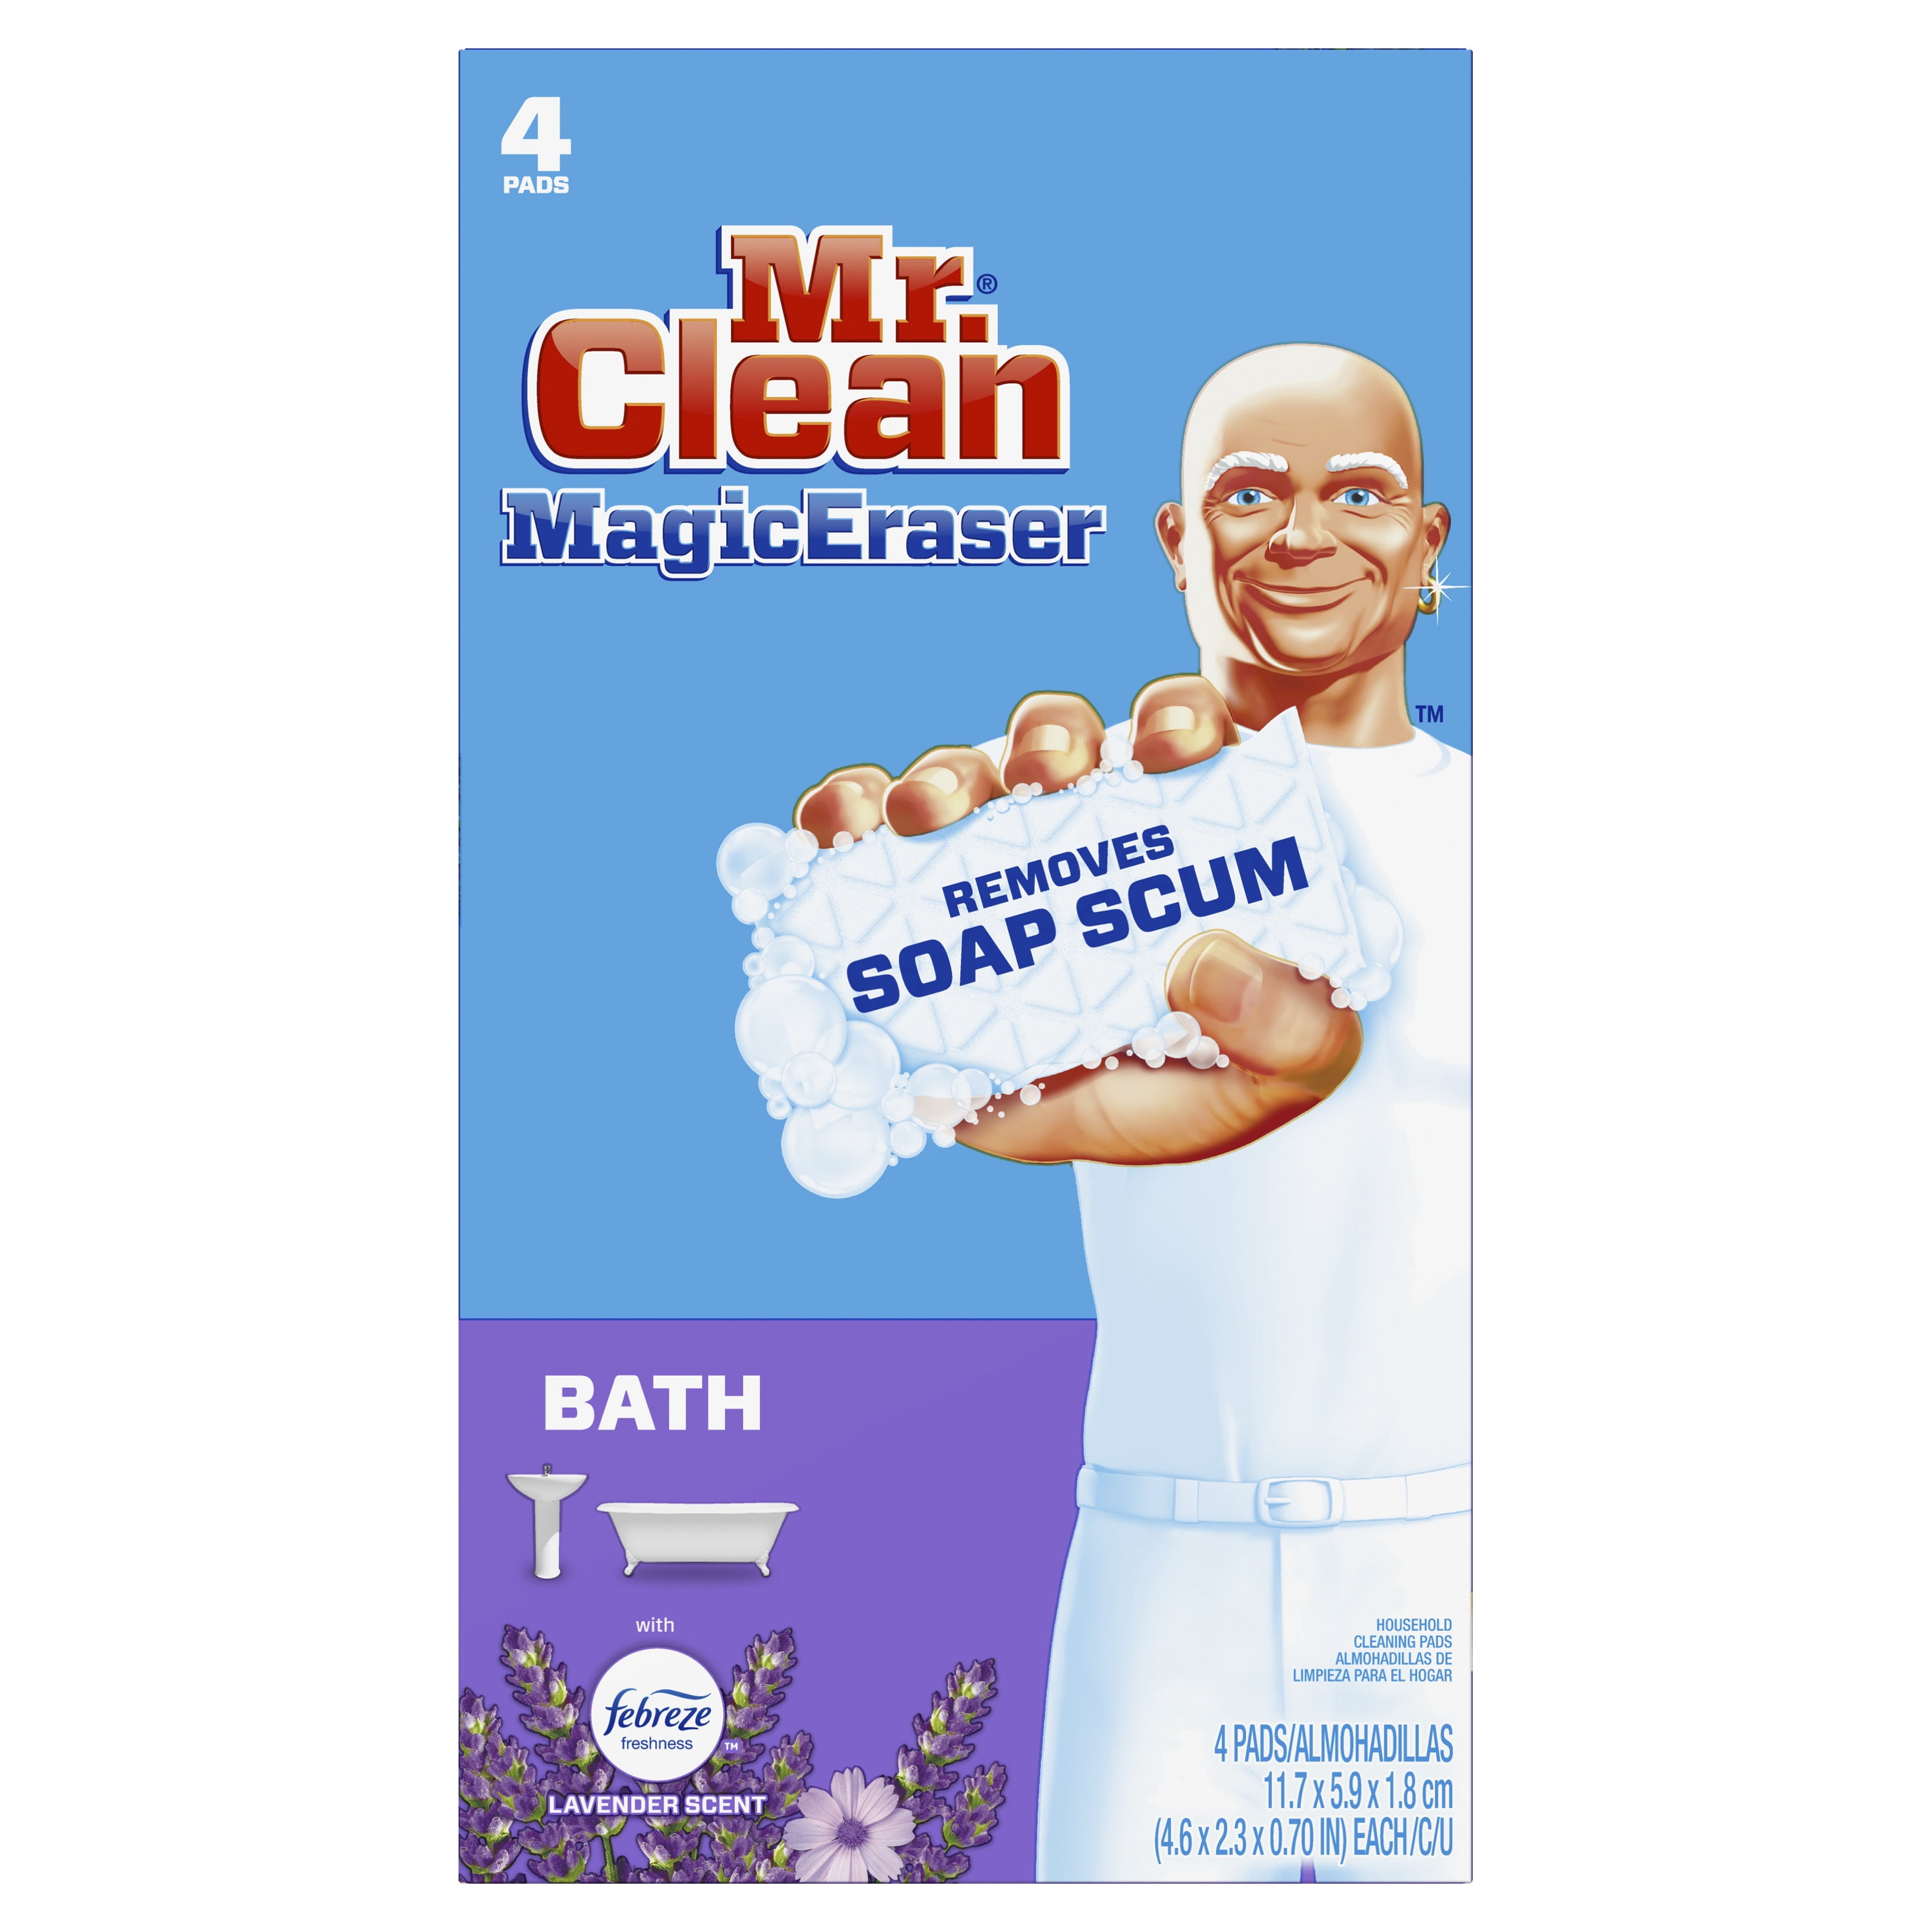 Với tấm lau vệ sinh phòng tắm Mr. Clean Magic Eraser với Durafoam và hương hoa oải hương, bạn sẽ không còn phải lo lắng về việc làm sạch phòng tắm nữa. Hãy xem hình ảnh liên quan đến từ khoá này để thấy được sức mạnh của sản phẩm khi làm sạch các vết bẩn khó nhằn một cách nhanh chóng và hiệu quả.